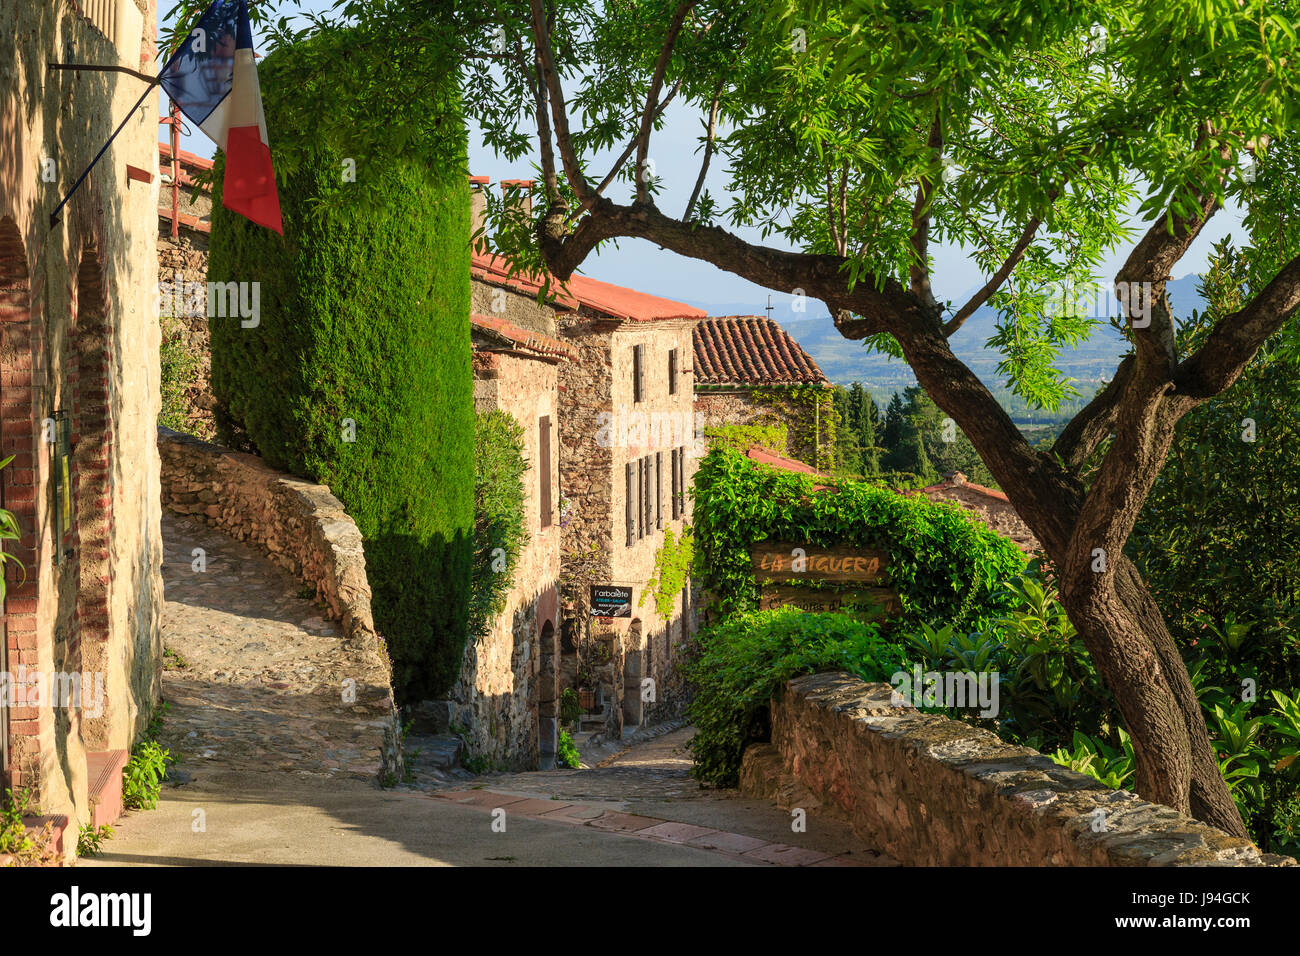 France, Pyrenees Orientales, Castelnou, labelled Les Plus Beaux Villages de France (The Most beautiful Village of France), street in the village Stock Photo